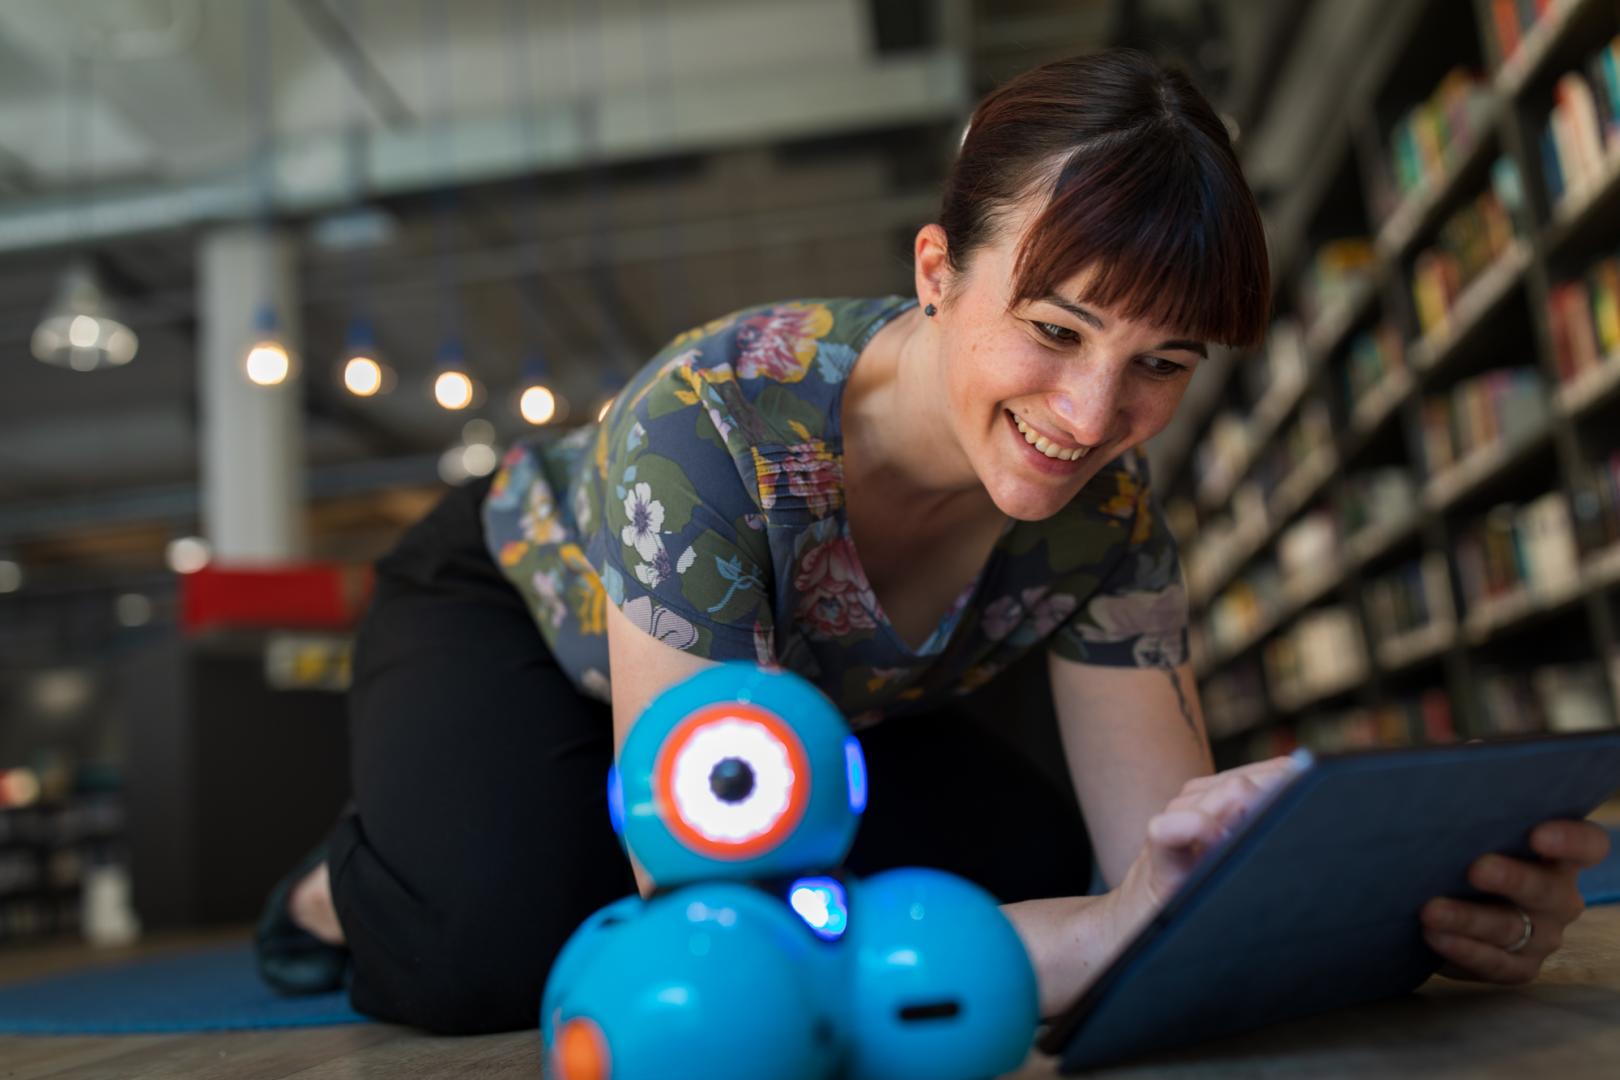 Bibliotheksmitarbeiterin programmiert einen Roboter